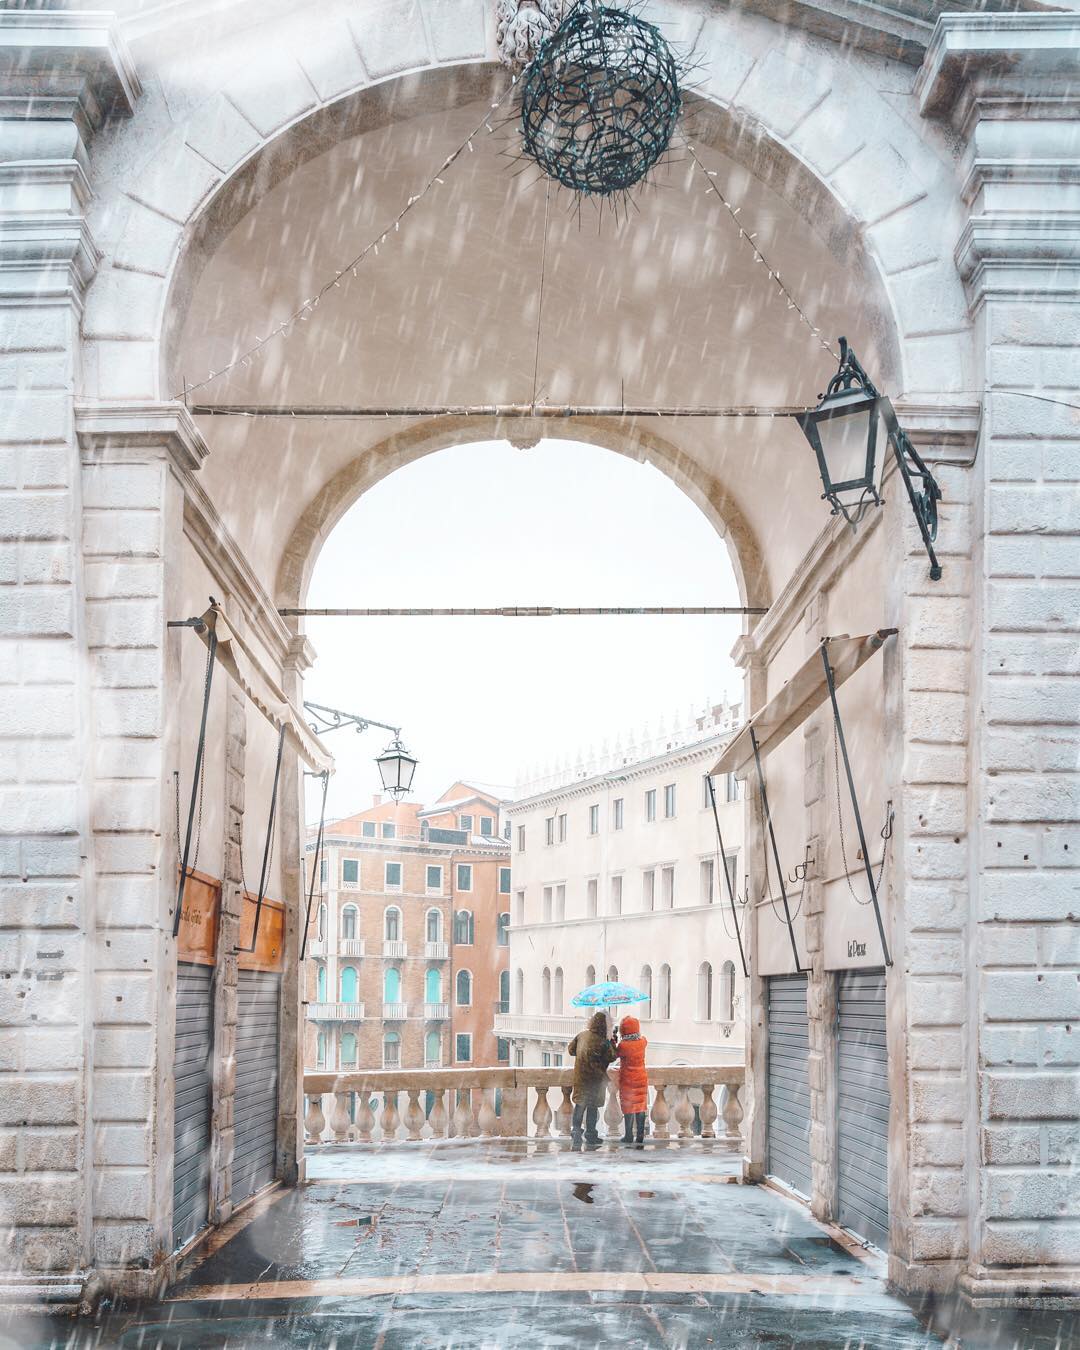 Городские пейзажи Венеции на снимках Марко Гаджио